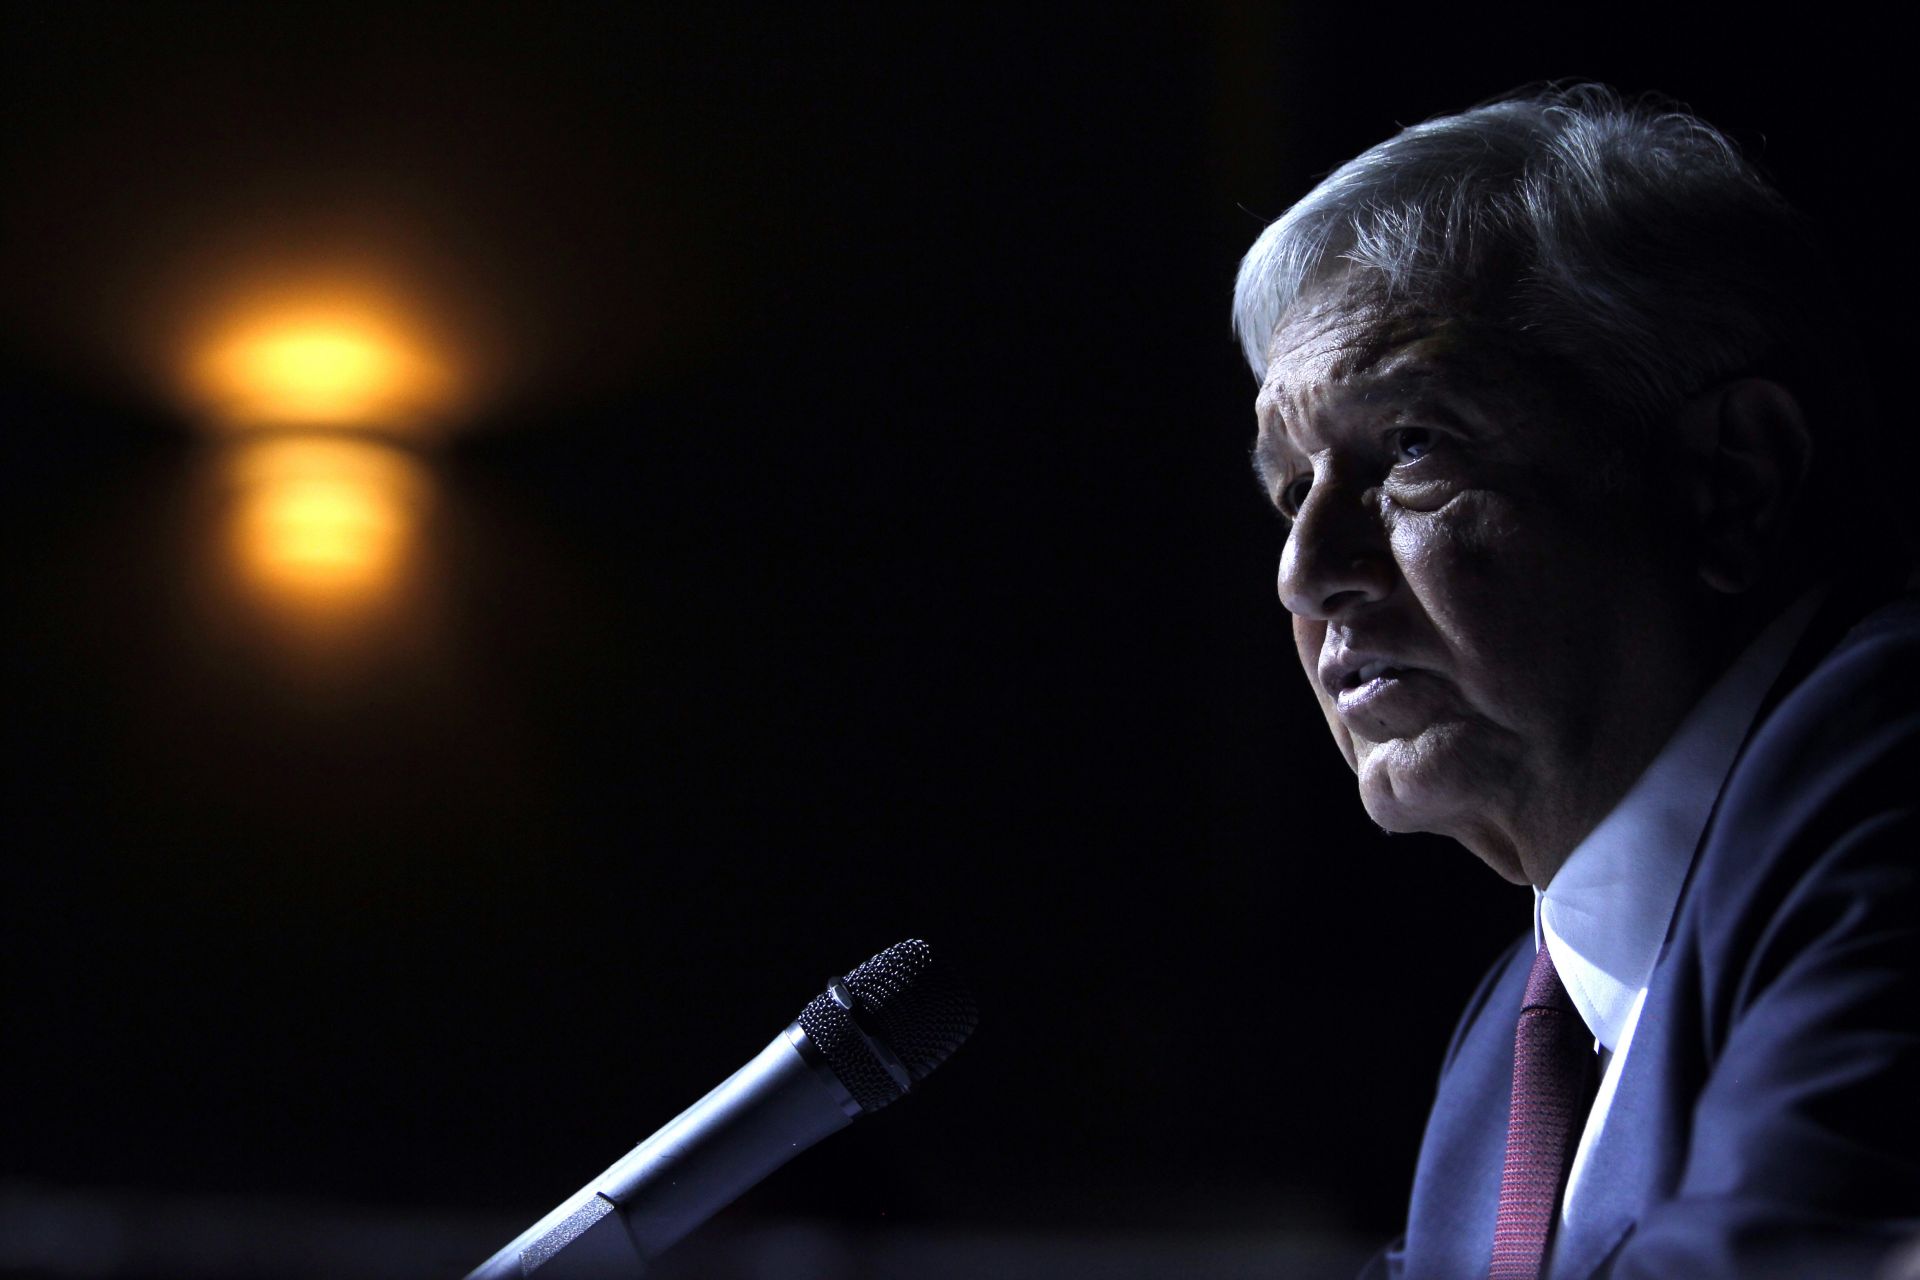 López Obrador invitará a Trump a su toma de posesión del 1 de diciembre